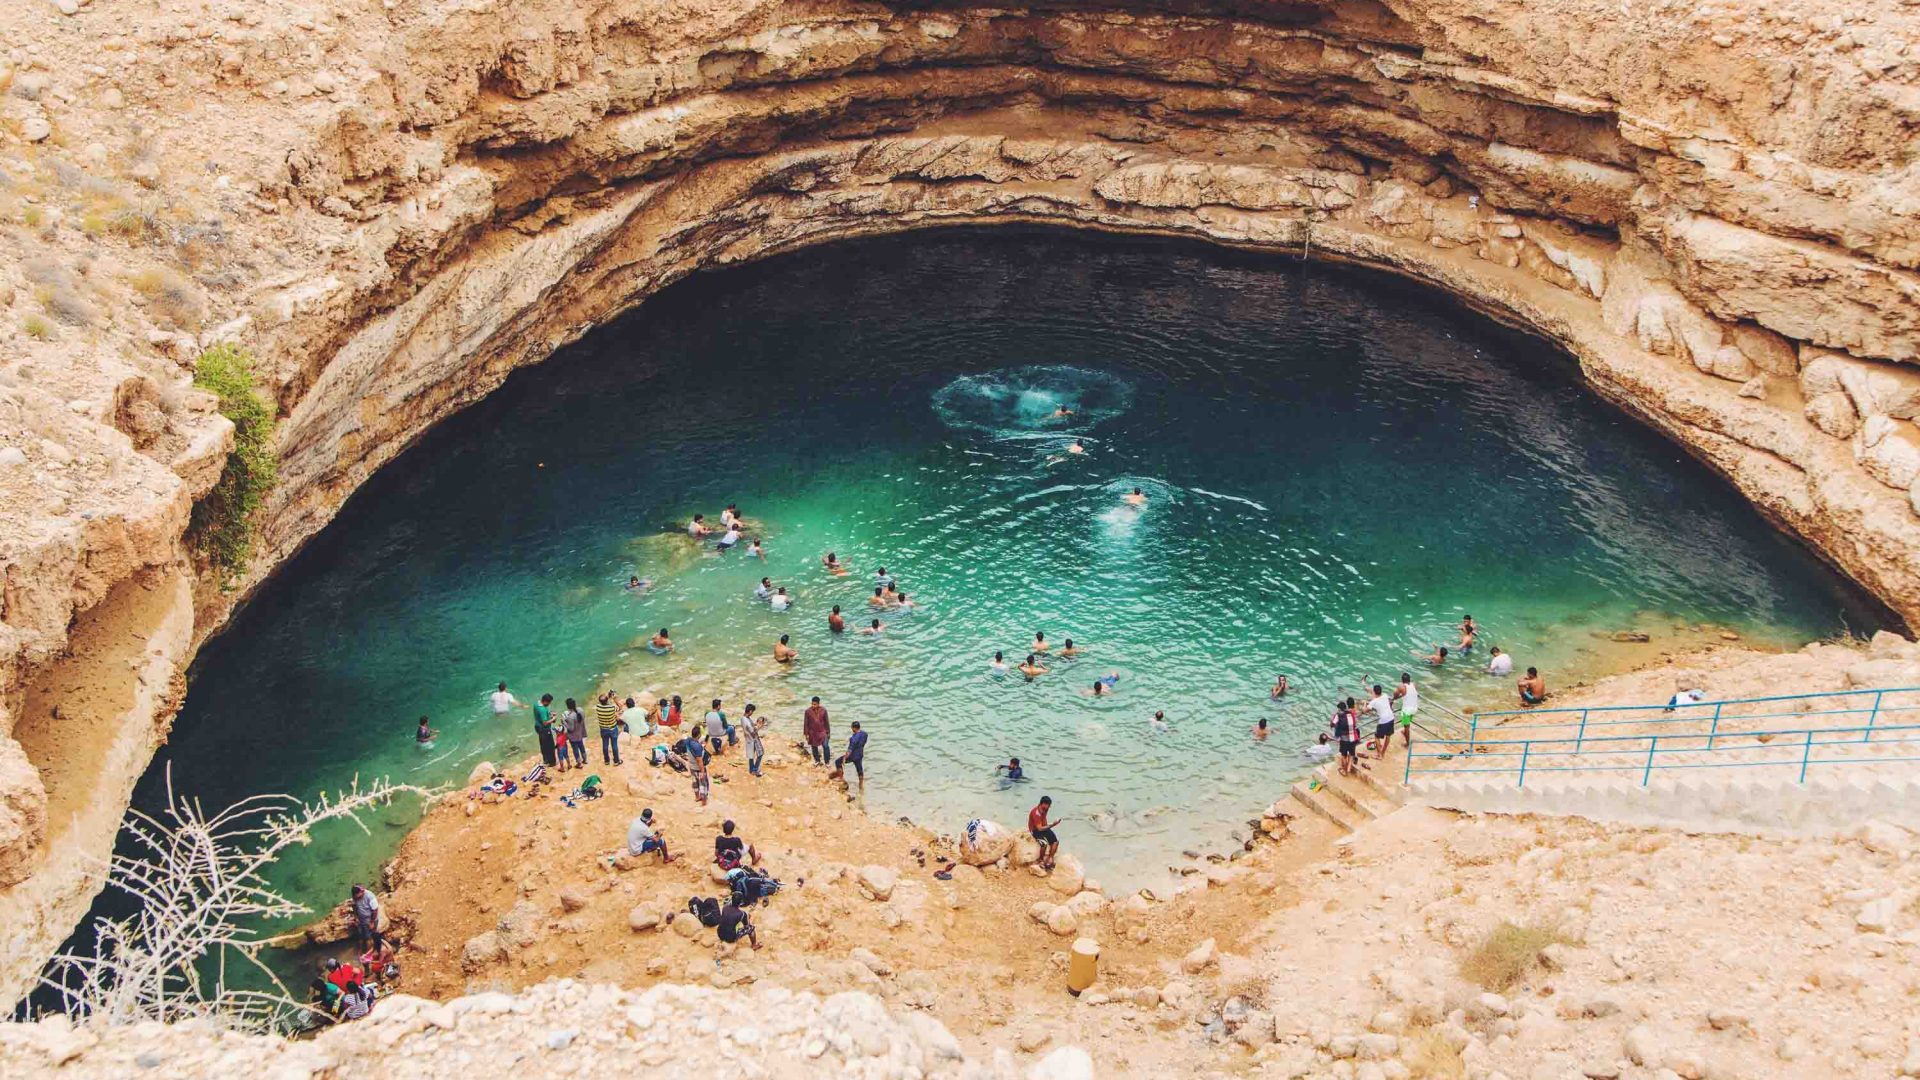 The Bimmah Sinkhole in Oman.